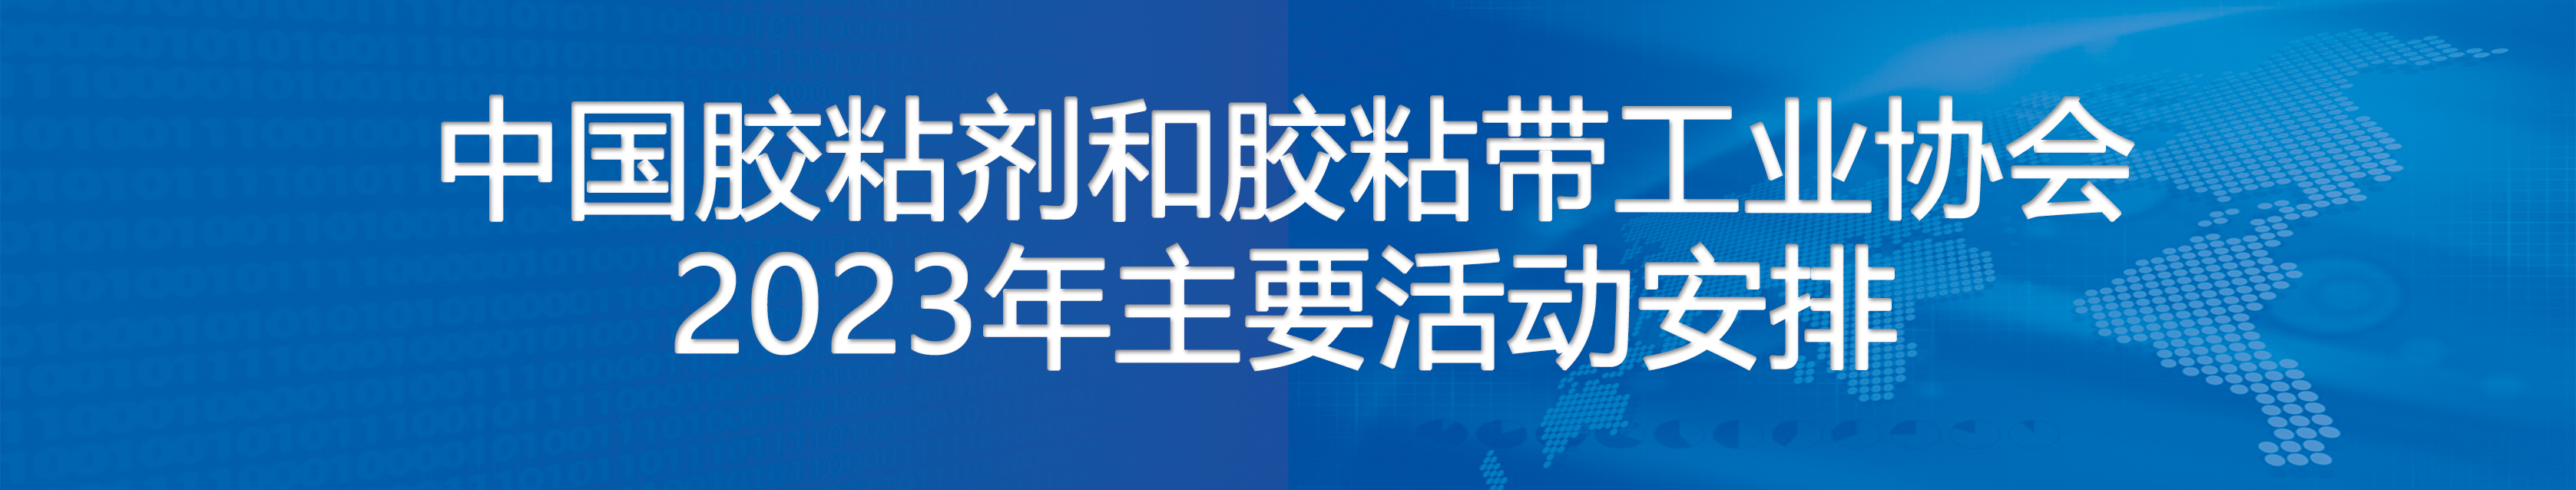 中国胶粘剂和胶粘带工业协会2023年主要活动安排